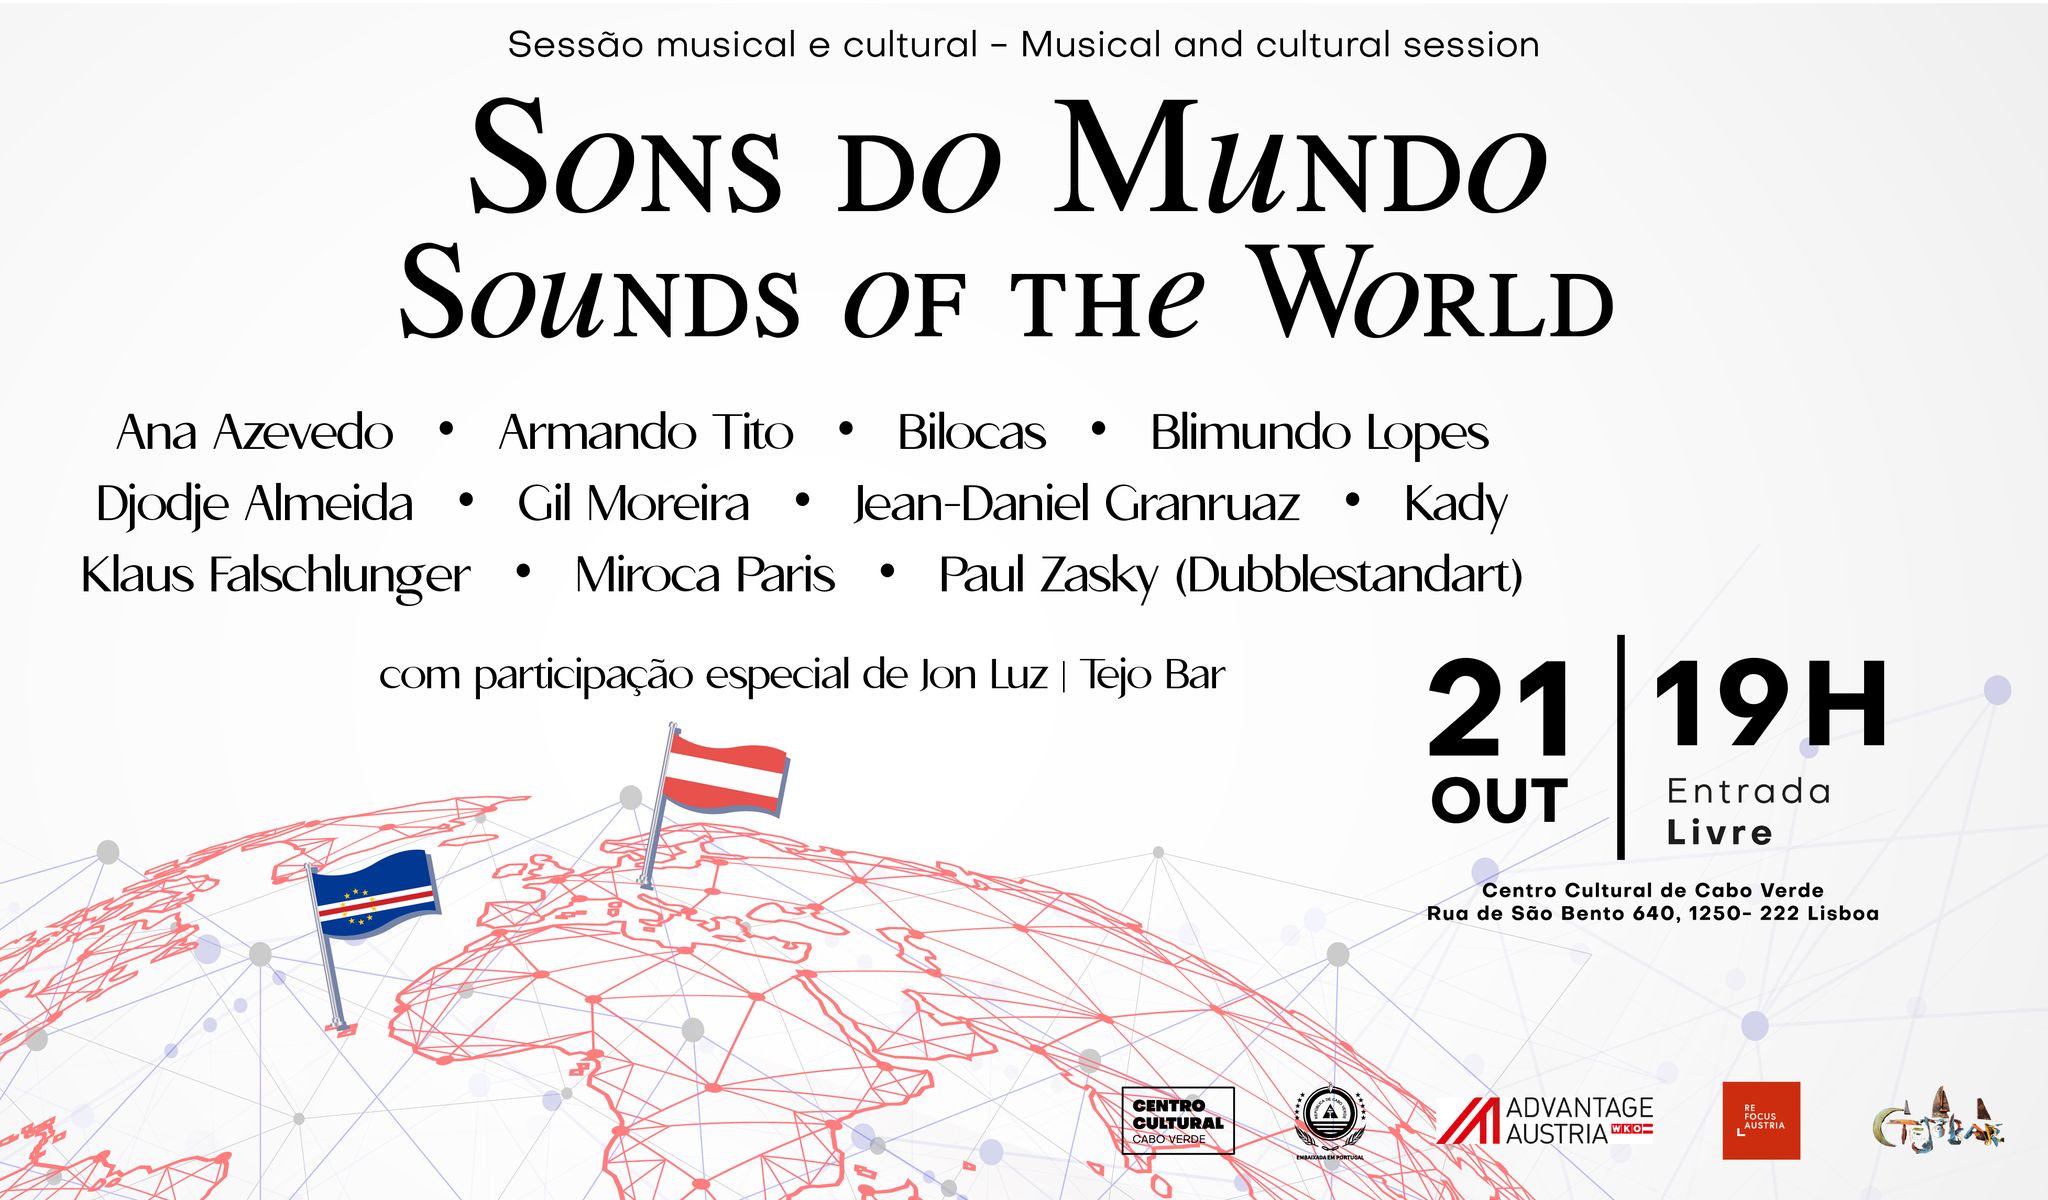 Sessão musical e cultural «Sons do Mundo - Sounds of the World»